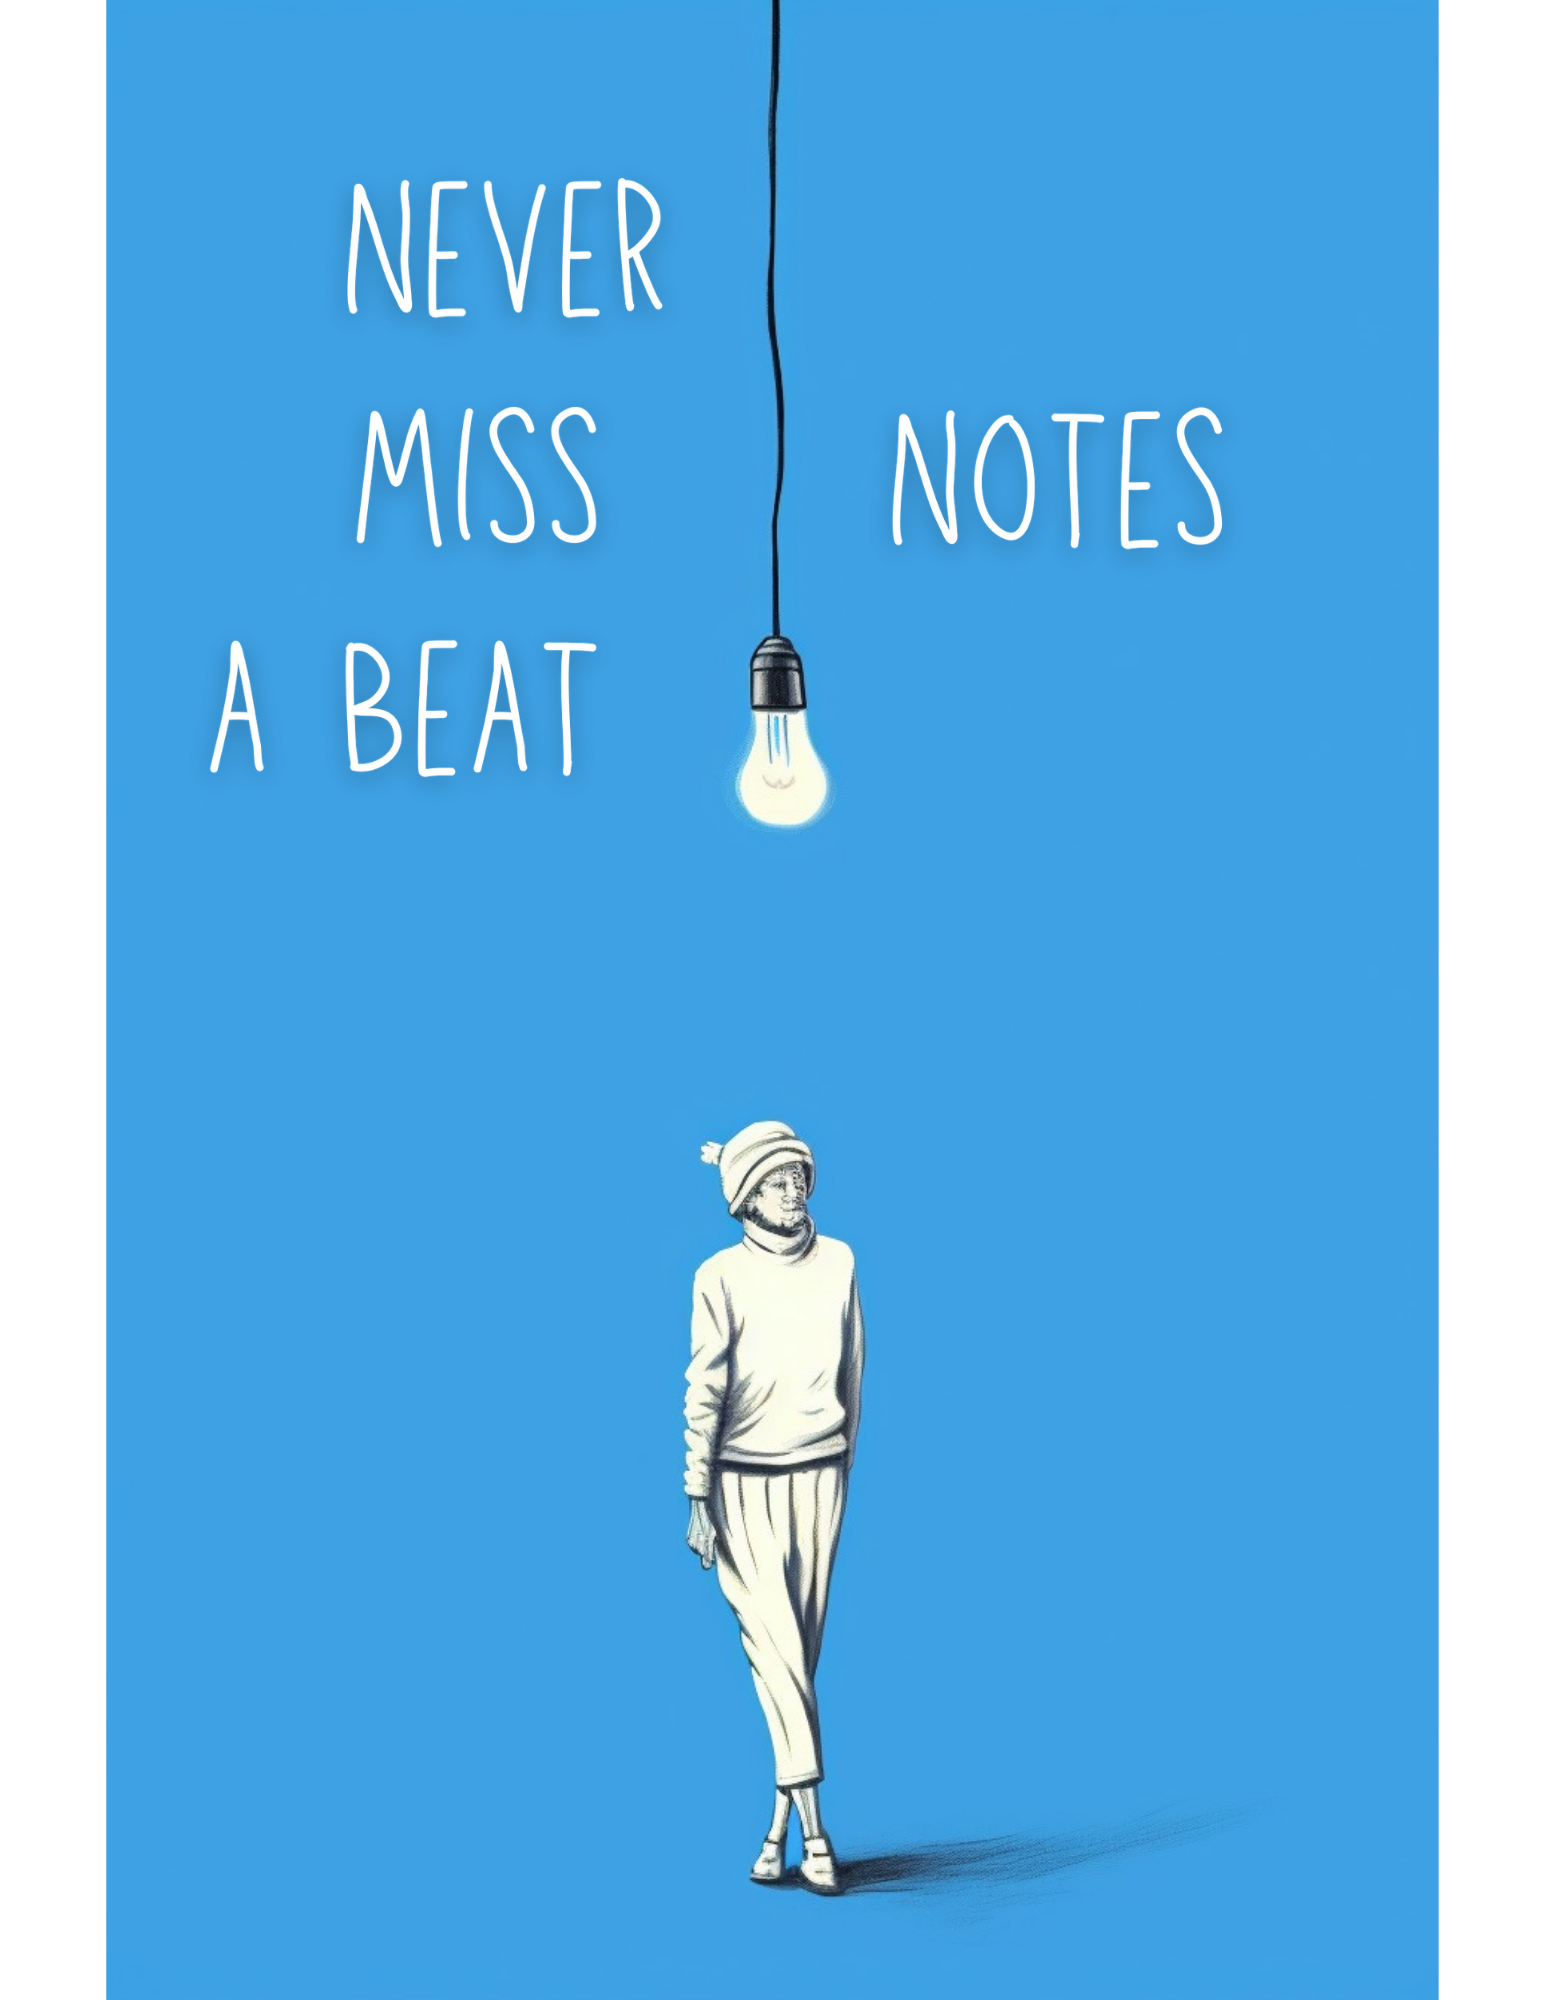 Never-miss-a-beat-notebook